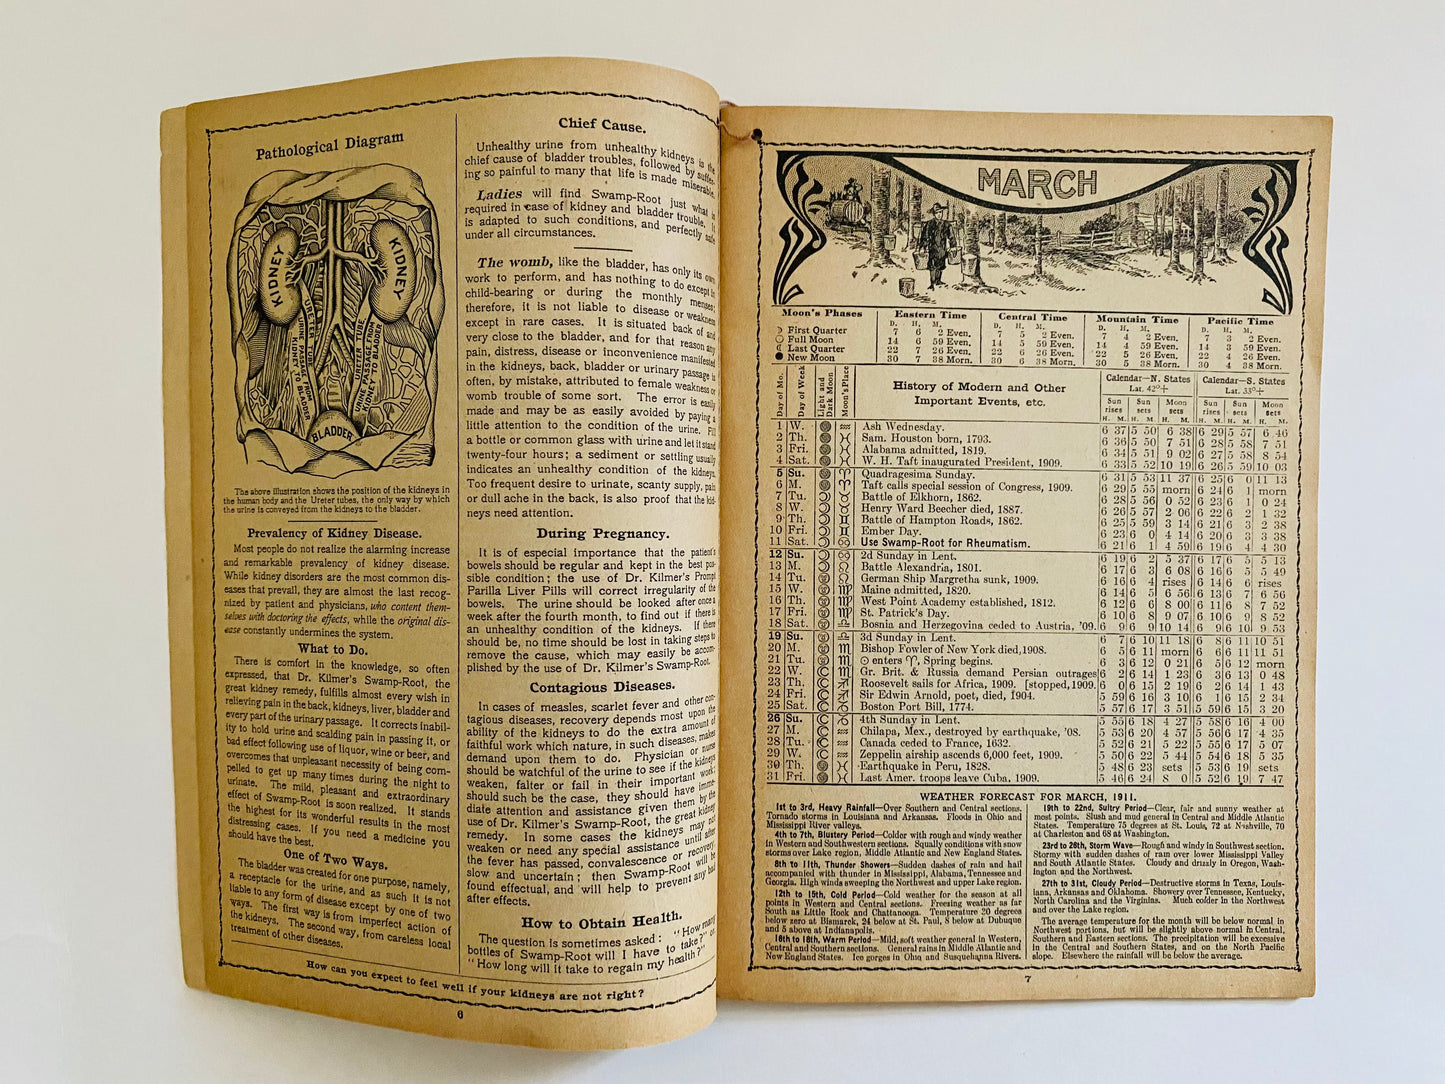 Swamp Root Almanac 1911